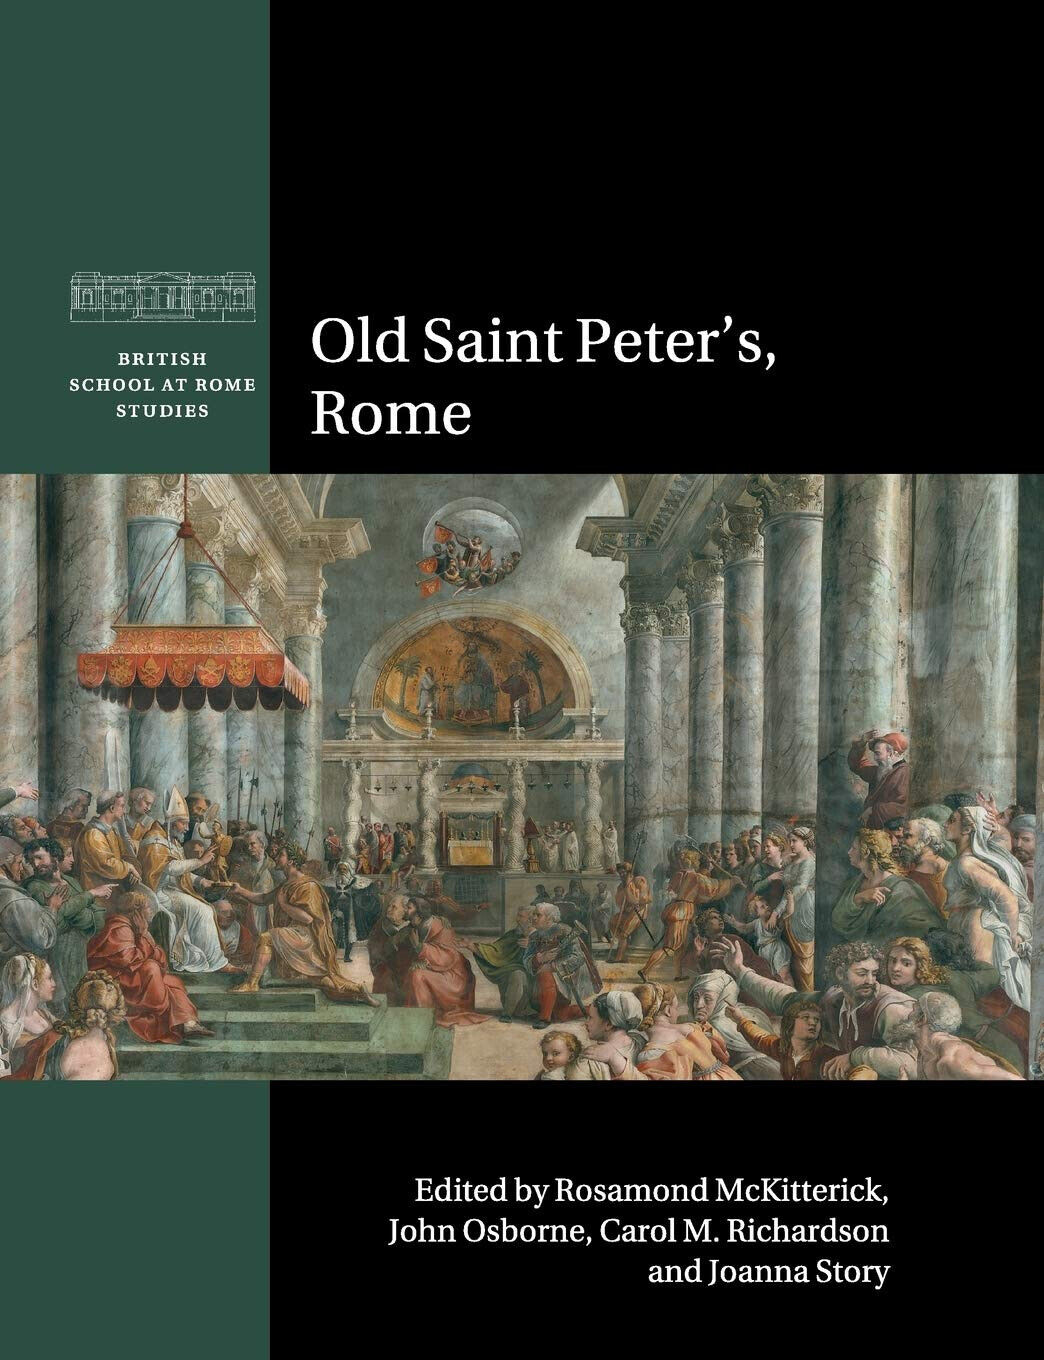 Old Saint Peter's, Rome - Rosamond McKitterick - Cambridge, 2019